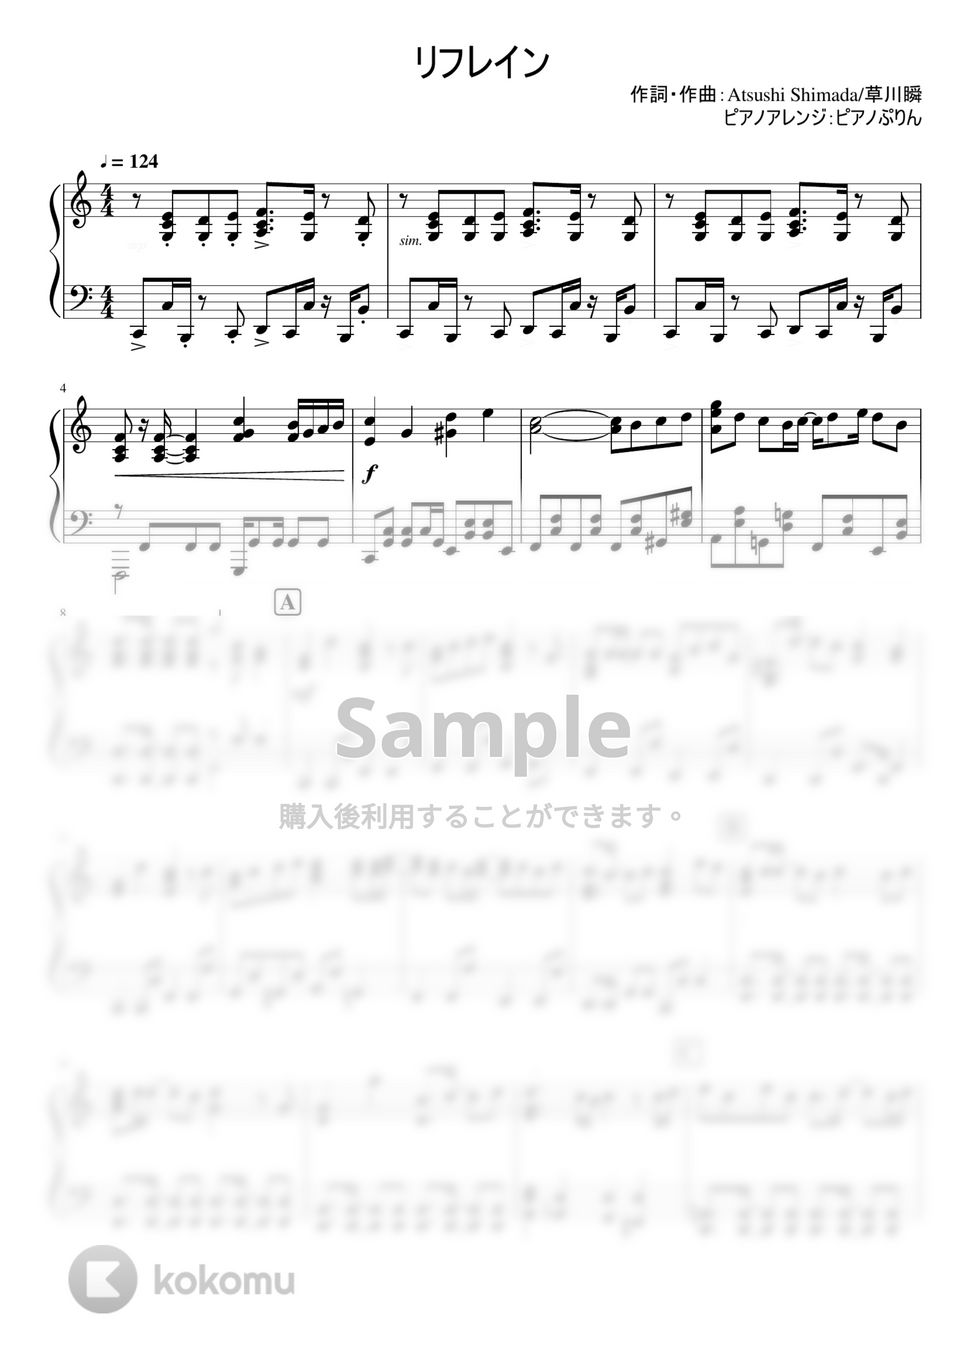 なにわ男子 - リフレイン (5th Single『Make Up Day / Missing』/通常盤収録曲/ピアノ中級アレンジ) by ピアノぷりん